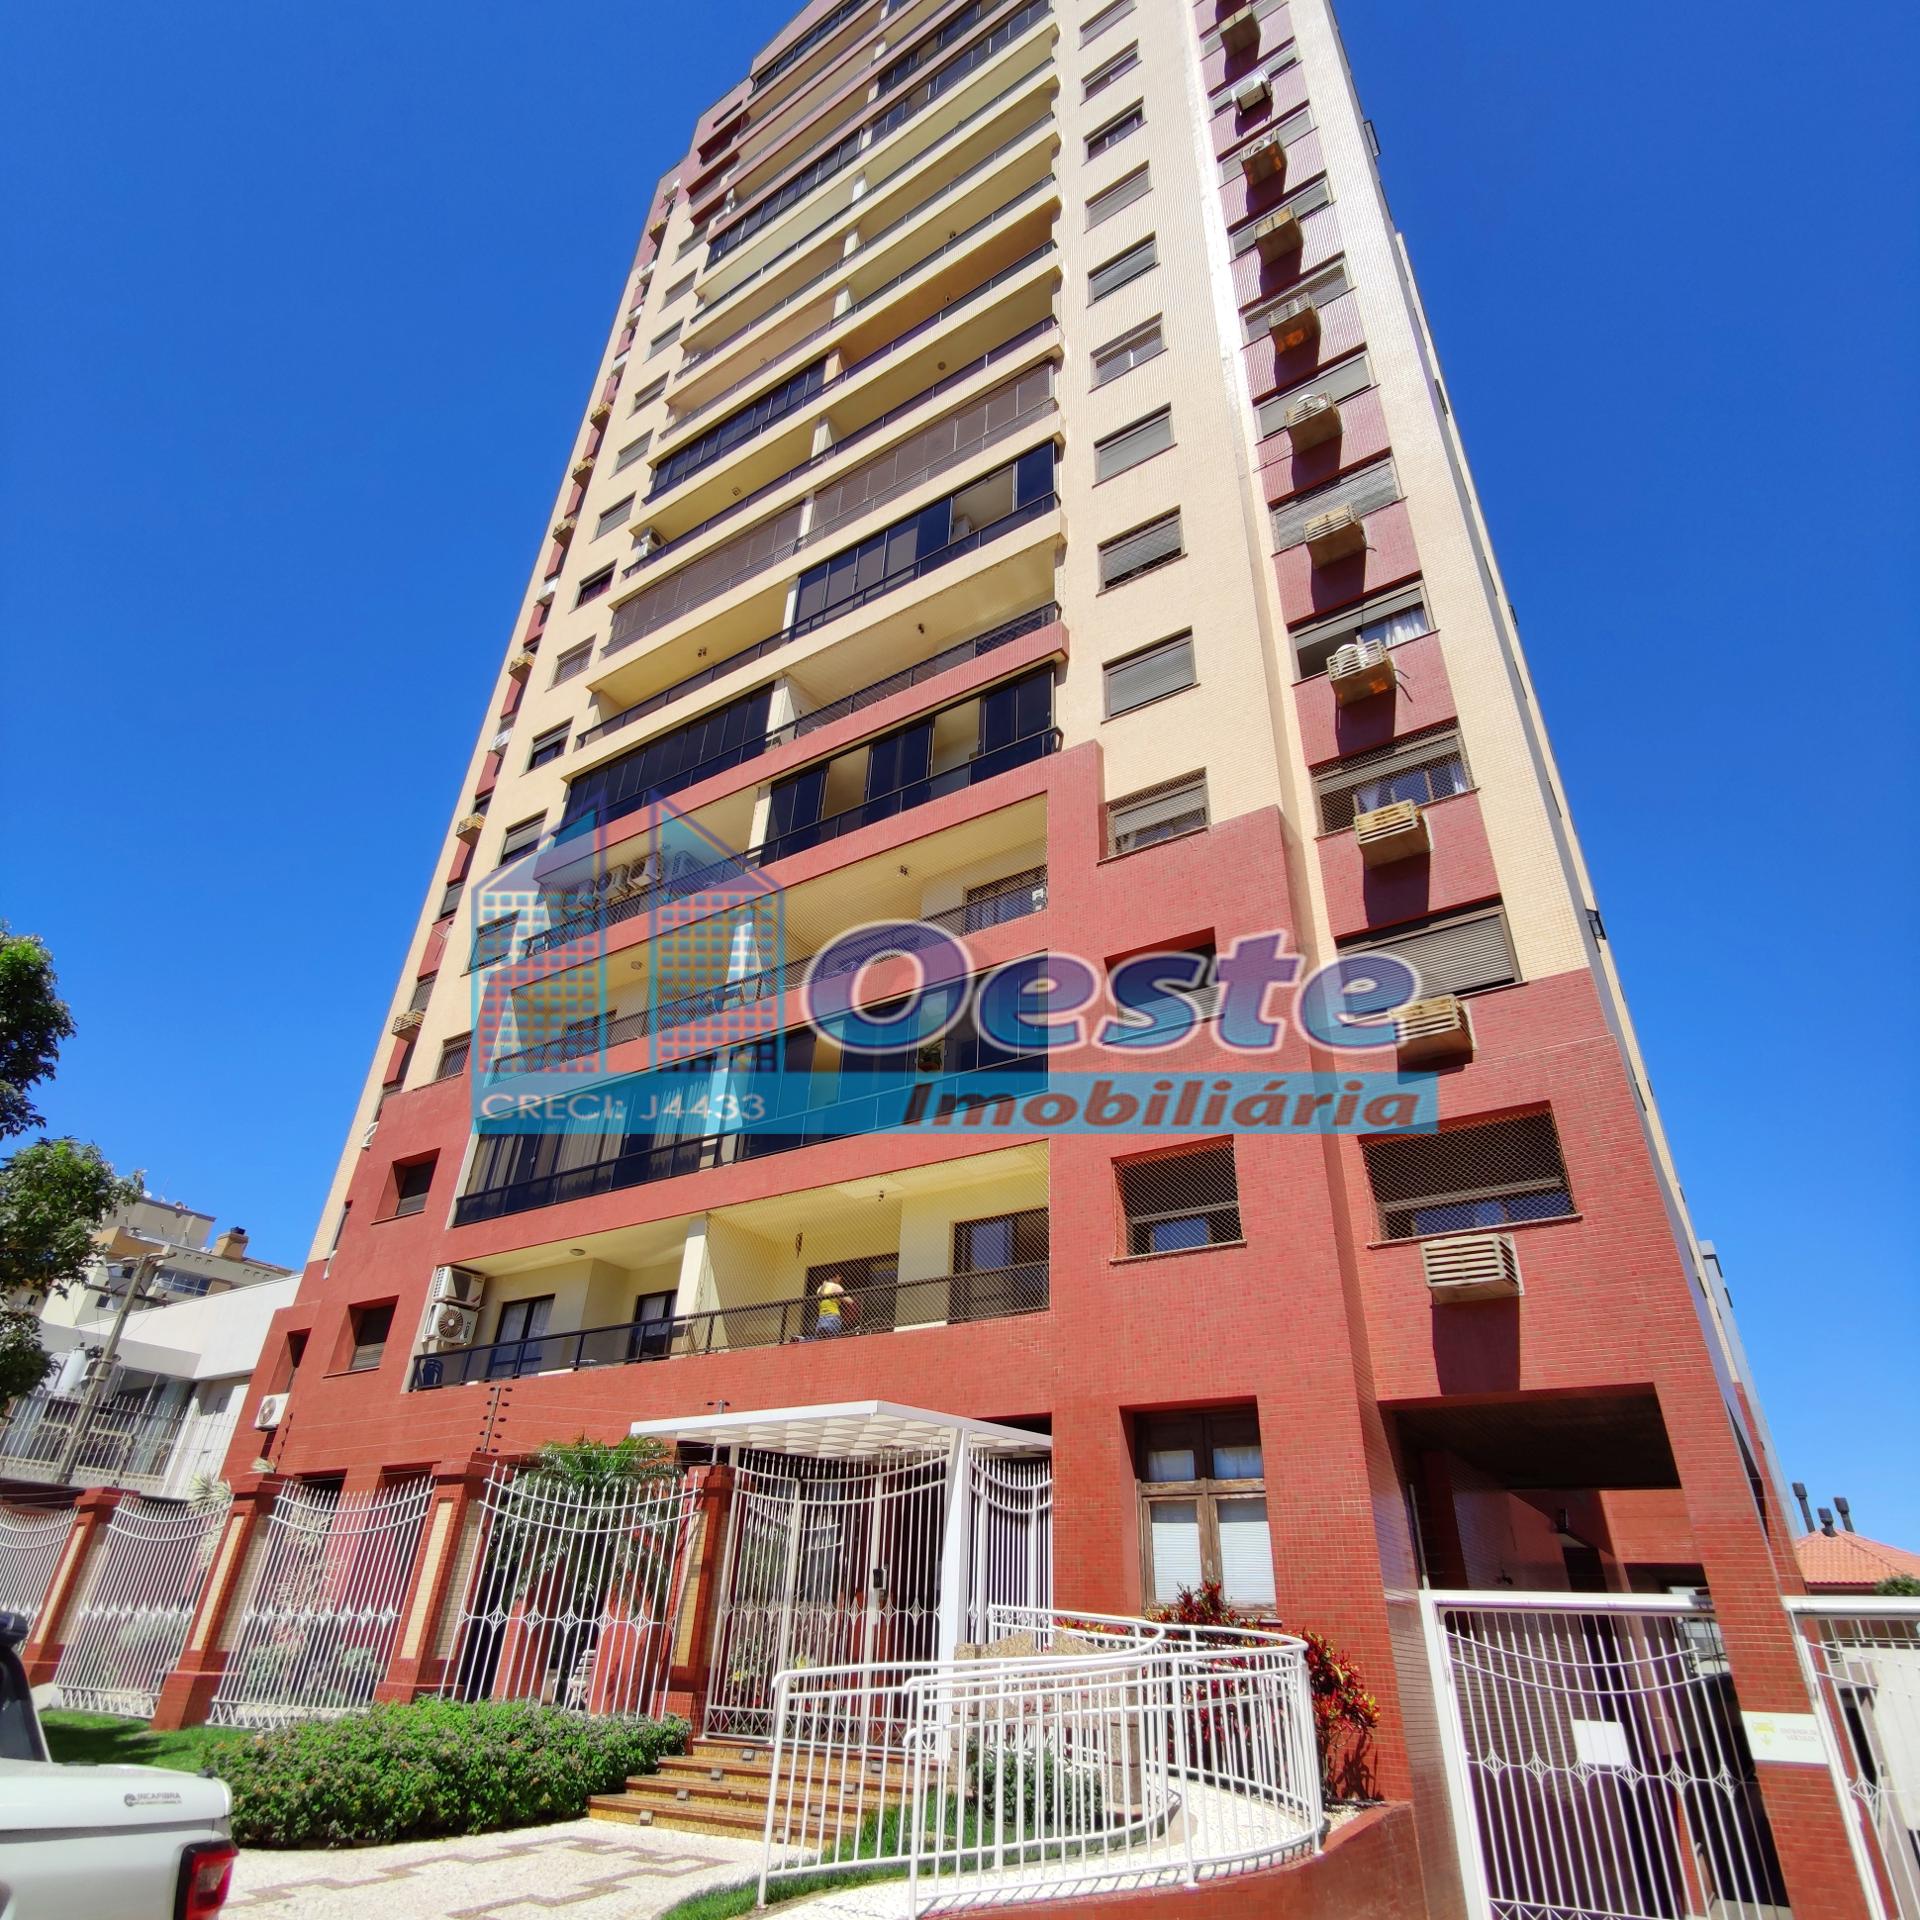 Apartamento com 3 dormitórios à venda,160.00 m², CENTRO, CASCA...